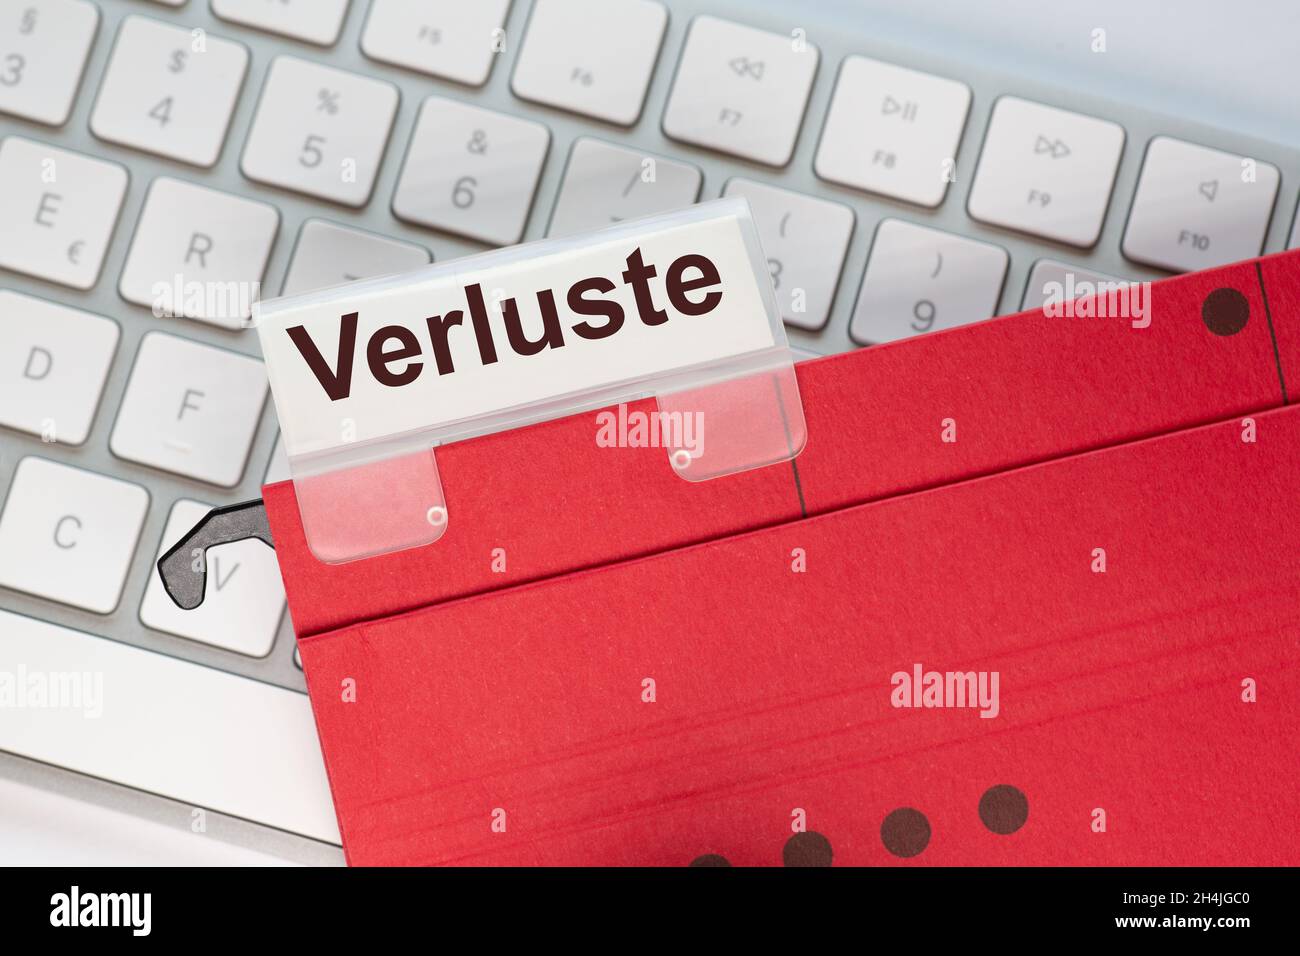 Le mot allemand pour les pertes peut être vu sur l'étiquette d'un dossier de suspension rouge.Le dossier d'affichage se trouve sur un clavier d'ordinateur. Banque D'Images